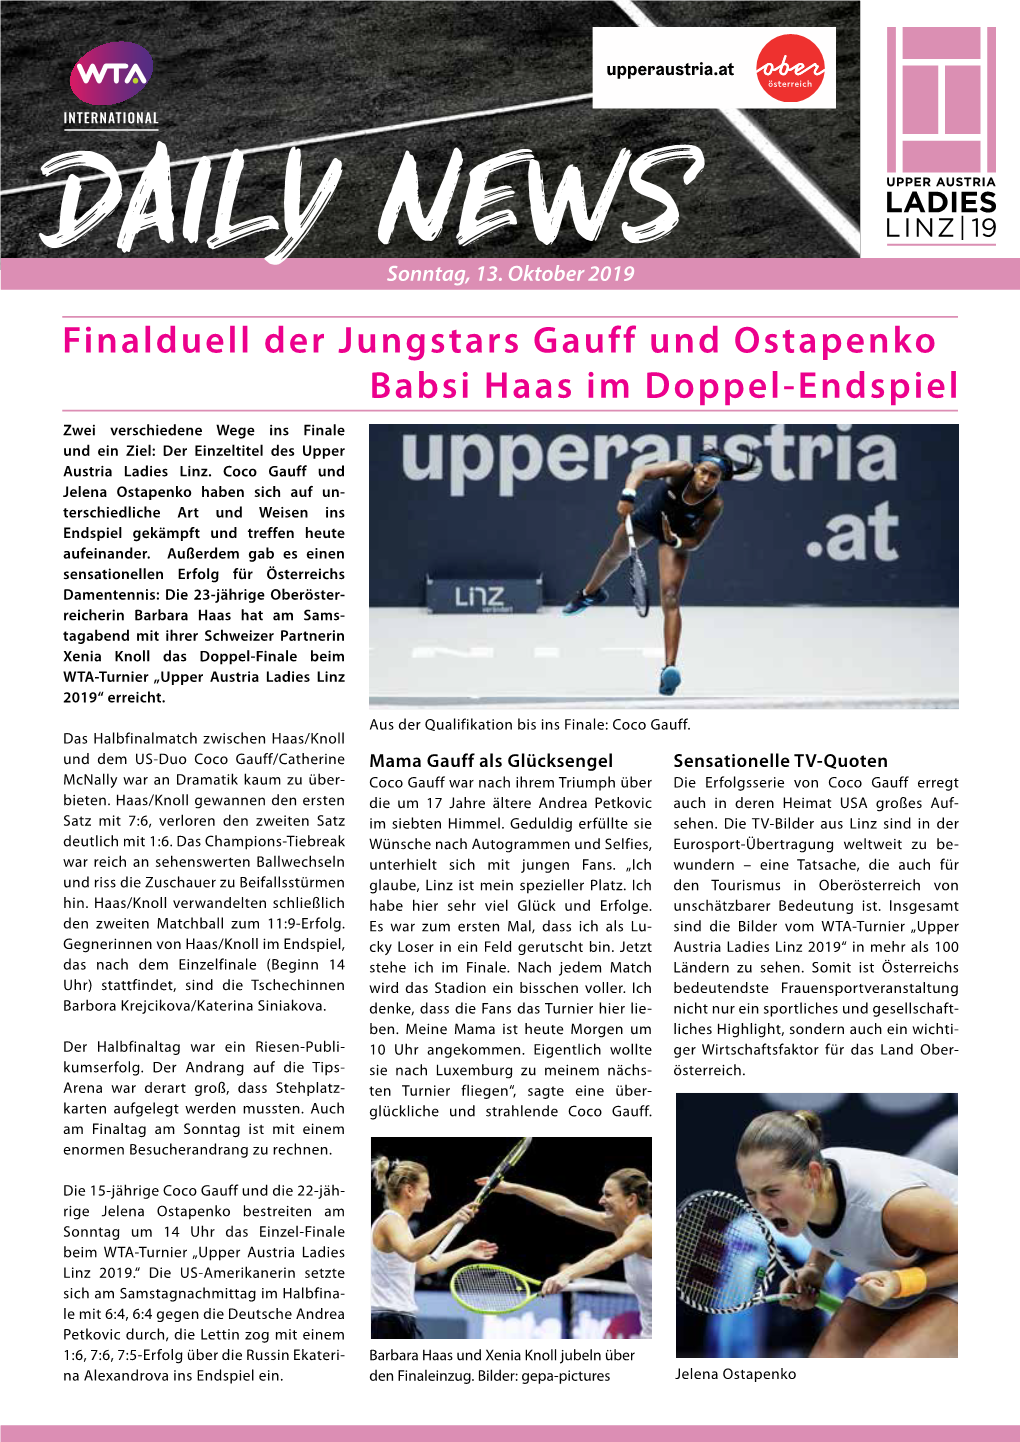 Finalduell Der Jungstars Gauff Und Ostapenko Babsi Haas Im Doppel-Endspiel